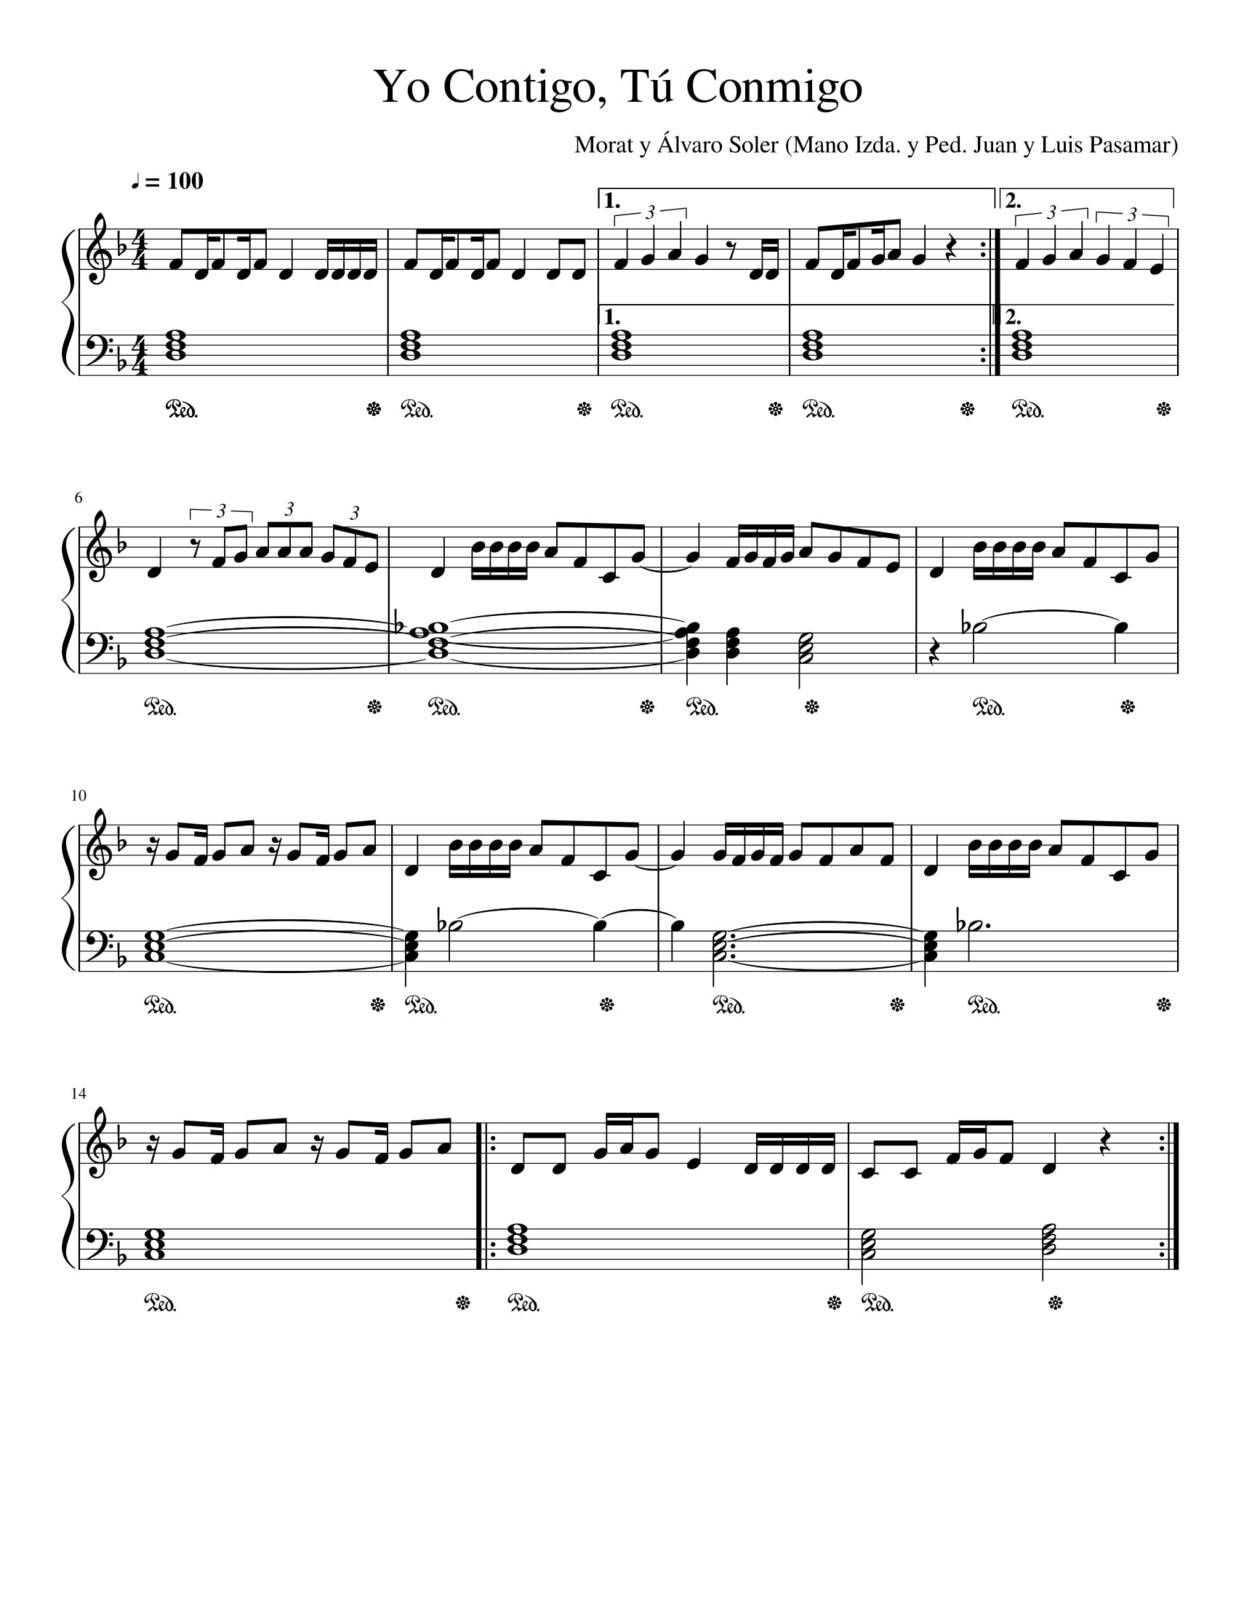 Partitura Para Piano "Yo Contigo, Tu Conmigo" | Morat y Álvaro Soler - Las  Notas De Nana